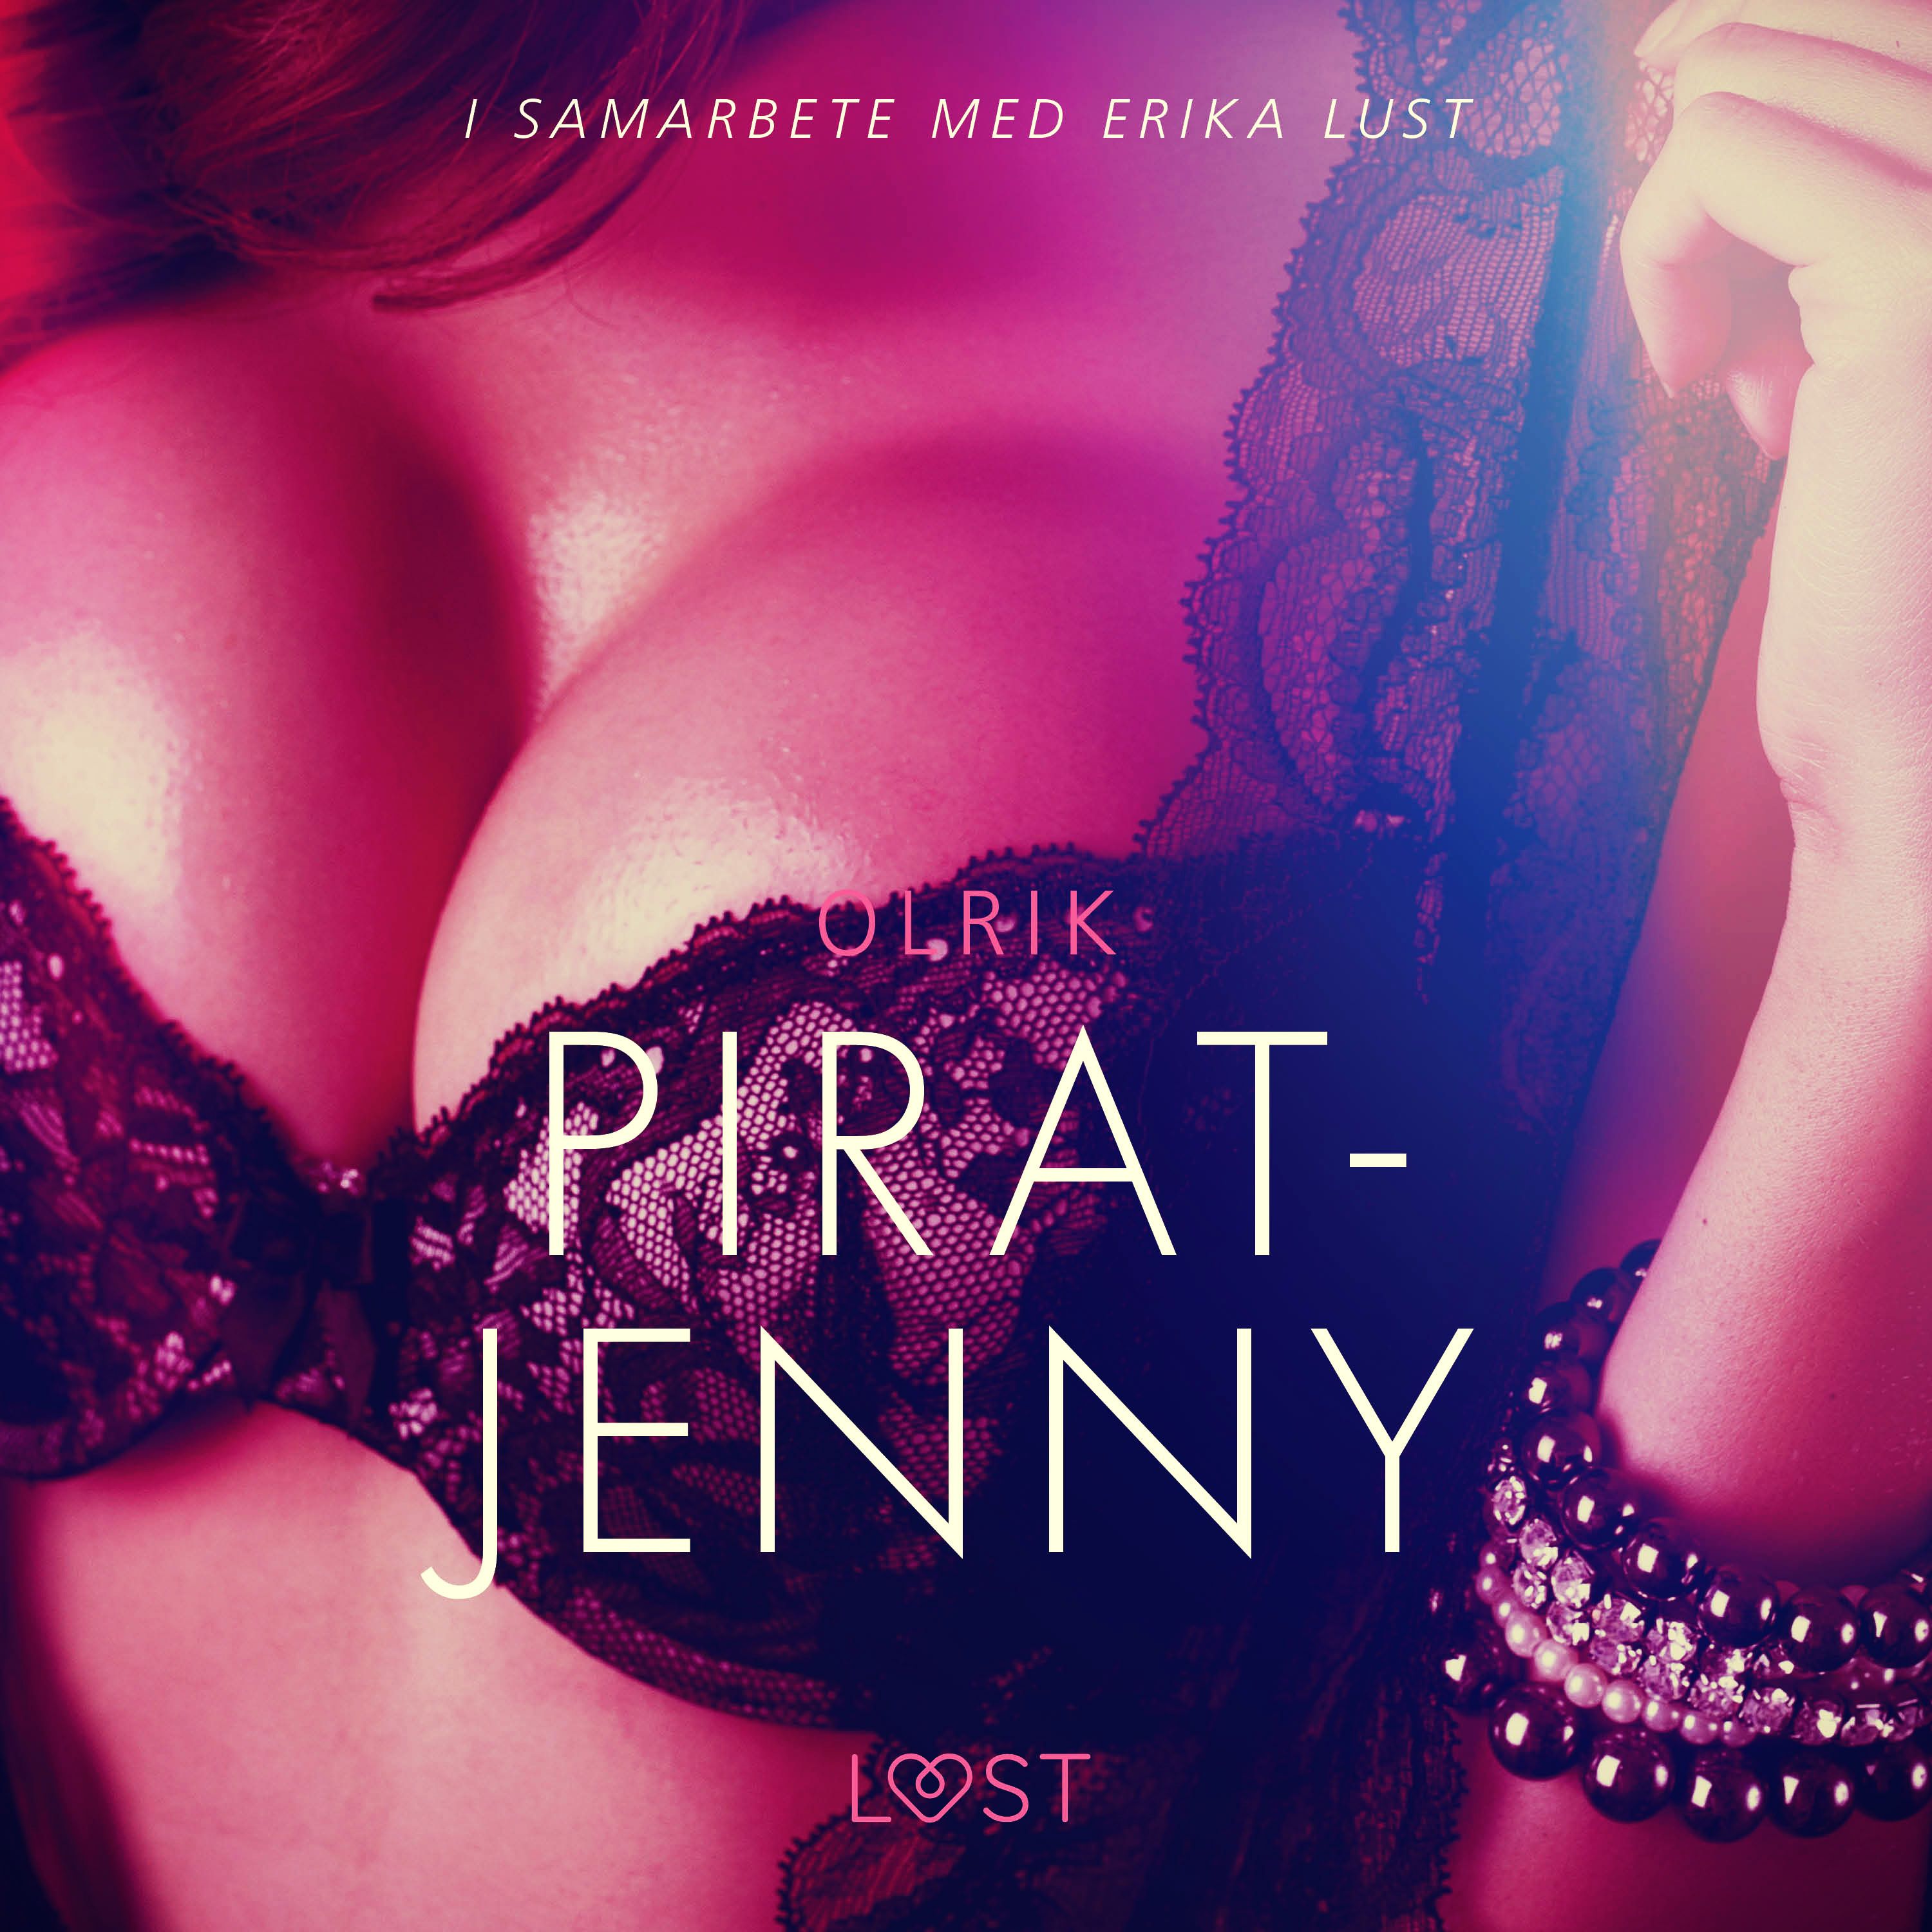 Pirat-Jenny - erotisk novell, audiobook by Olrik